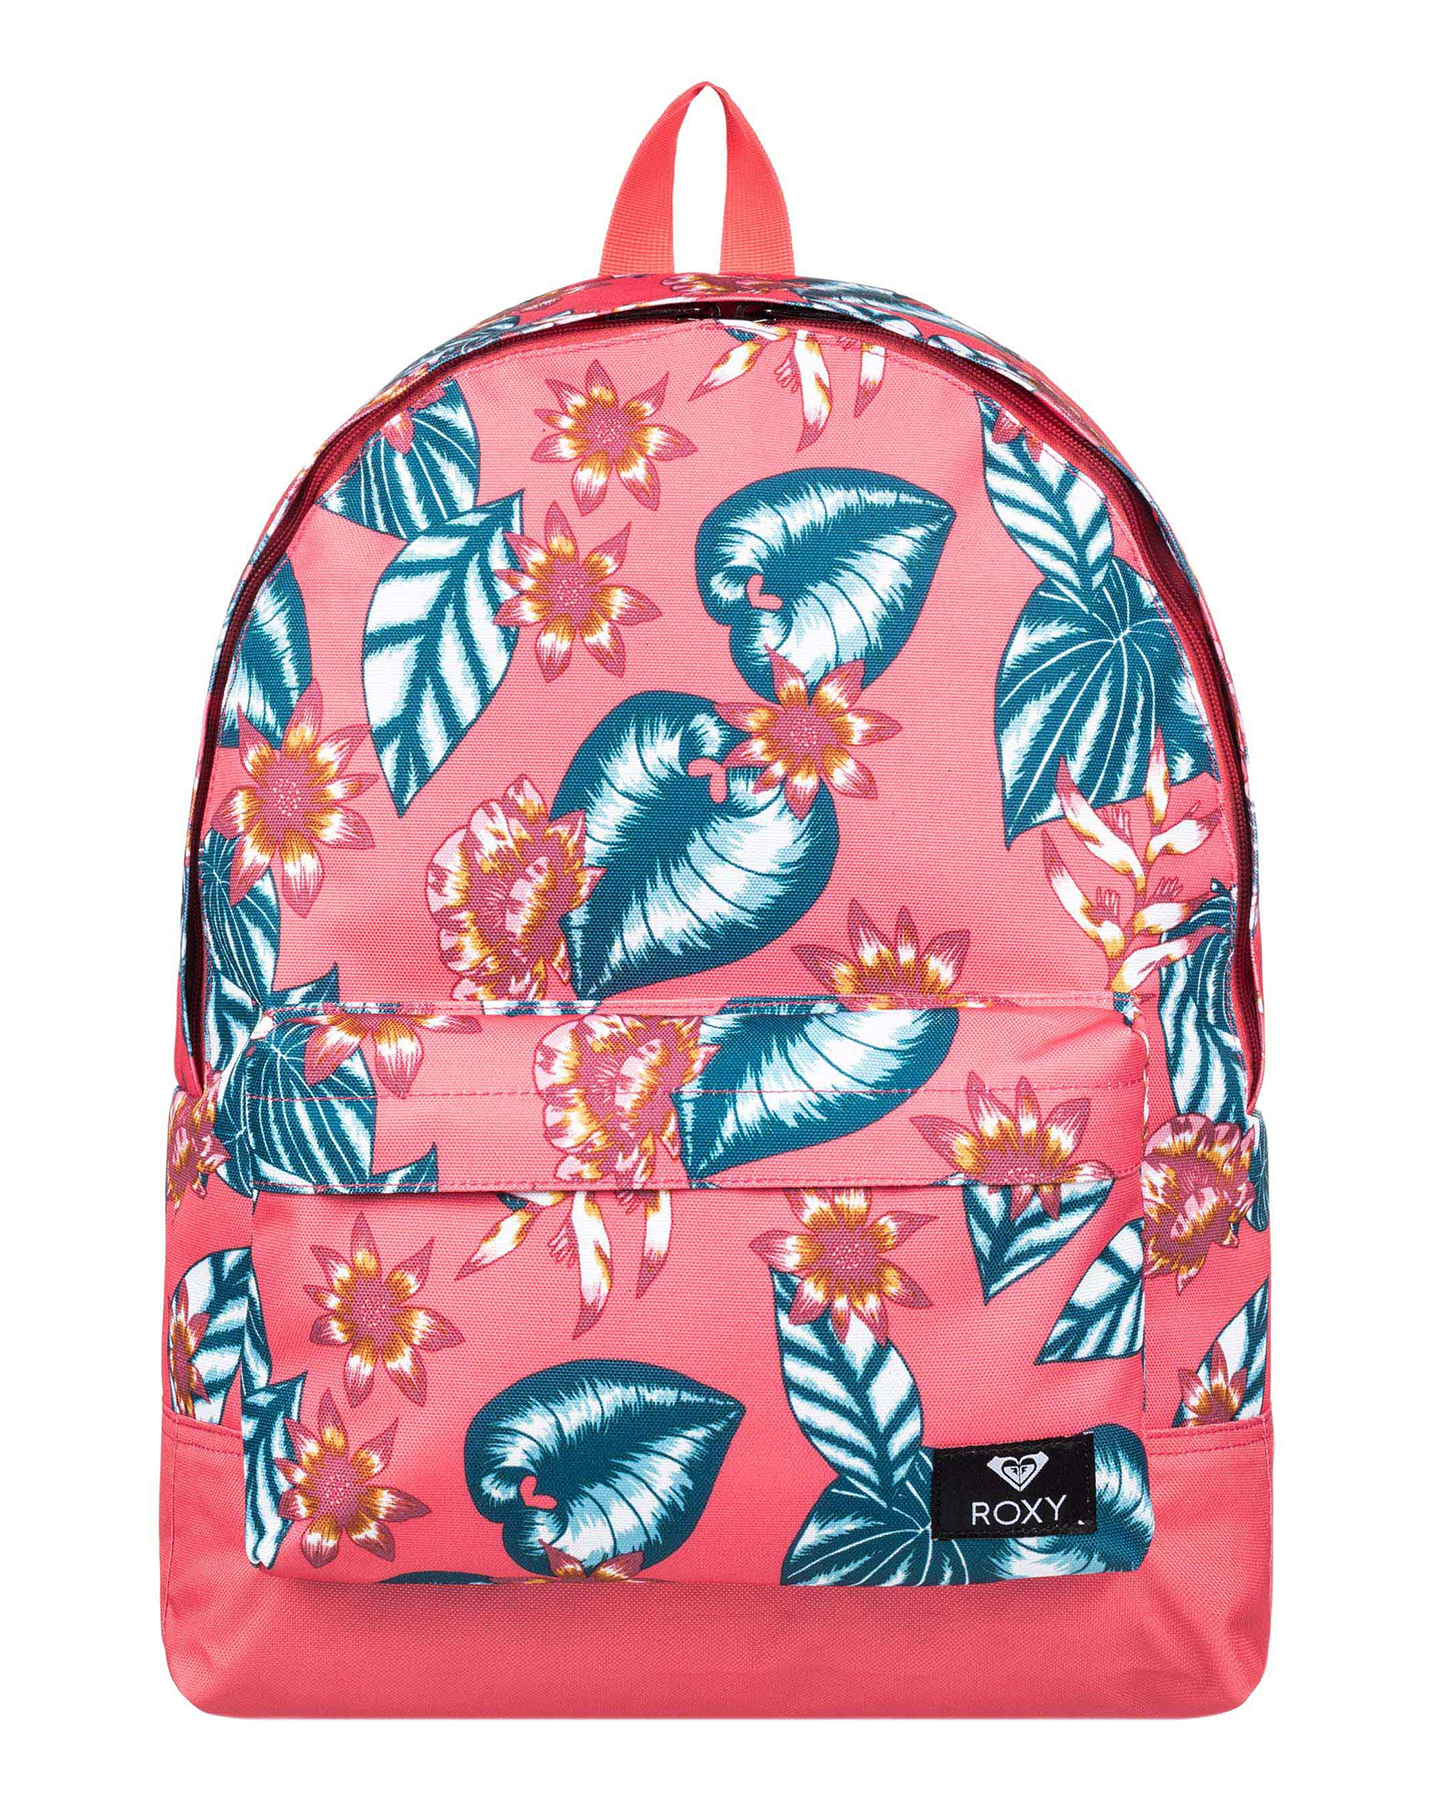 Roxy Sugar Baby 16L Medium Backpack - Dubarry S Leafy | SurfStitch